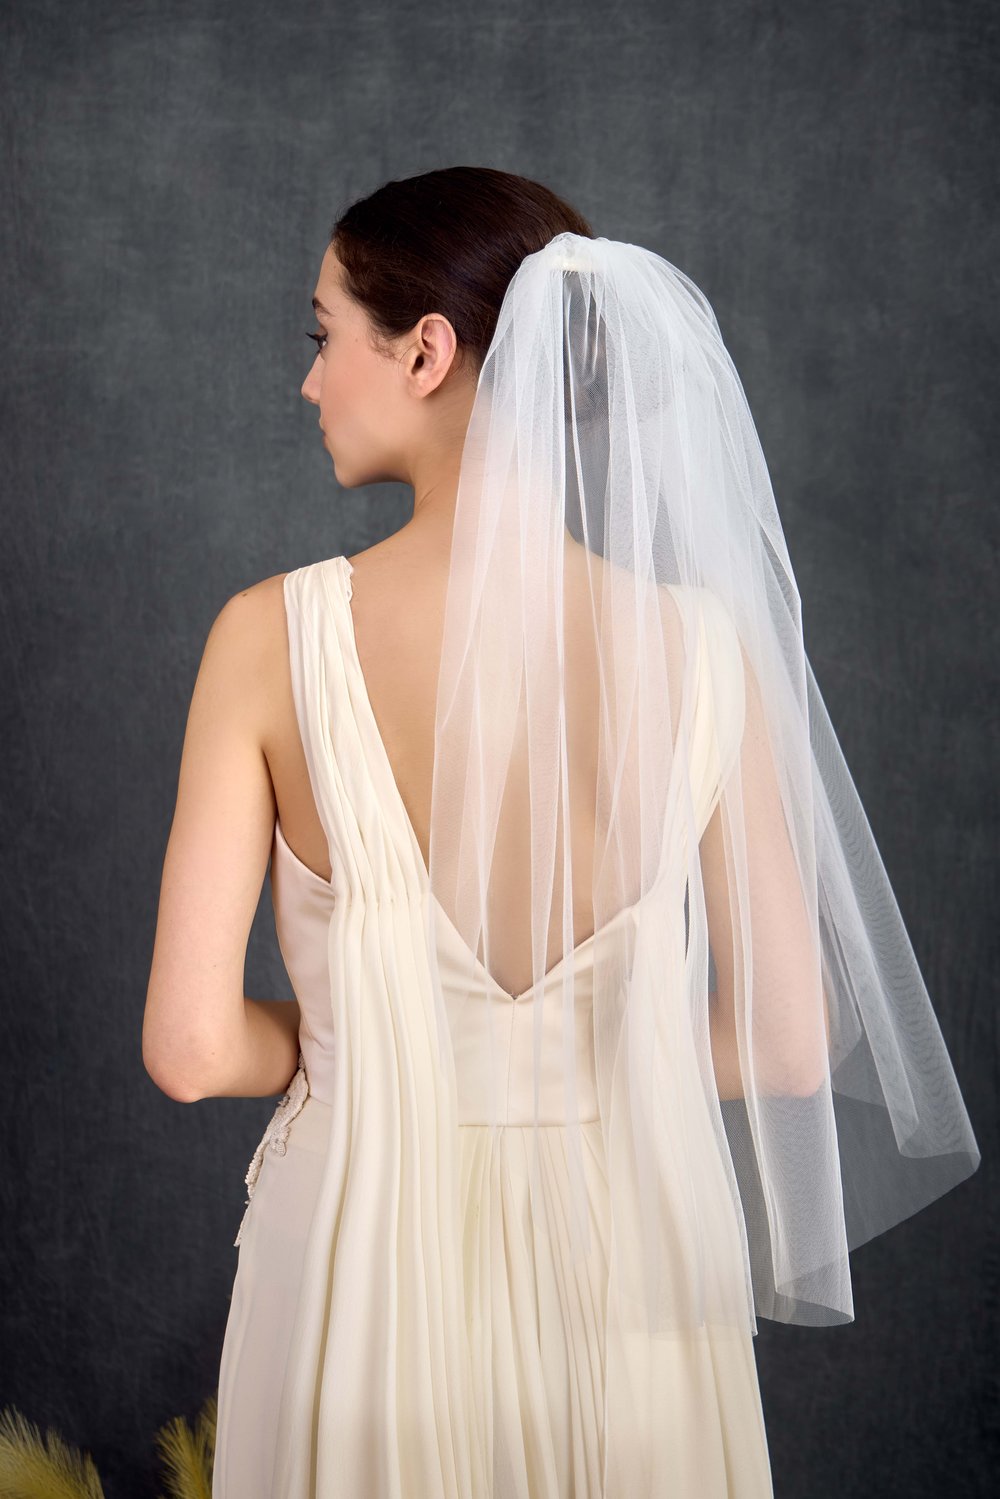 Ivory/White, Tulle, One-tier Fingertip Length Bridal Veil 36 — NK Bride